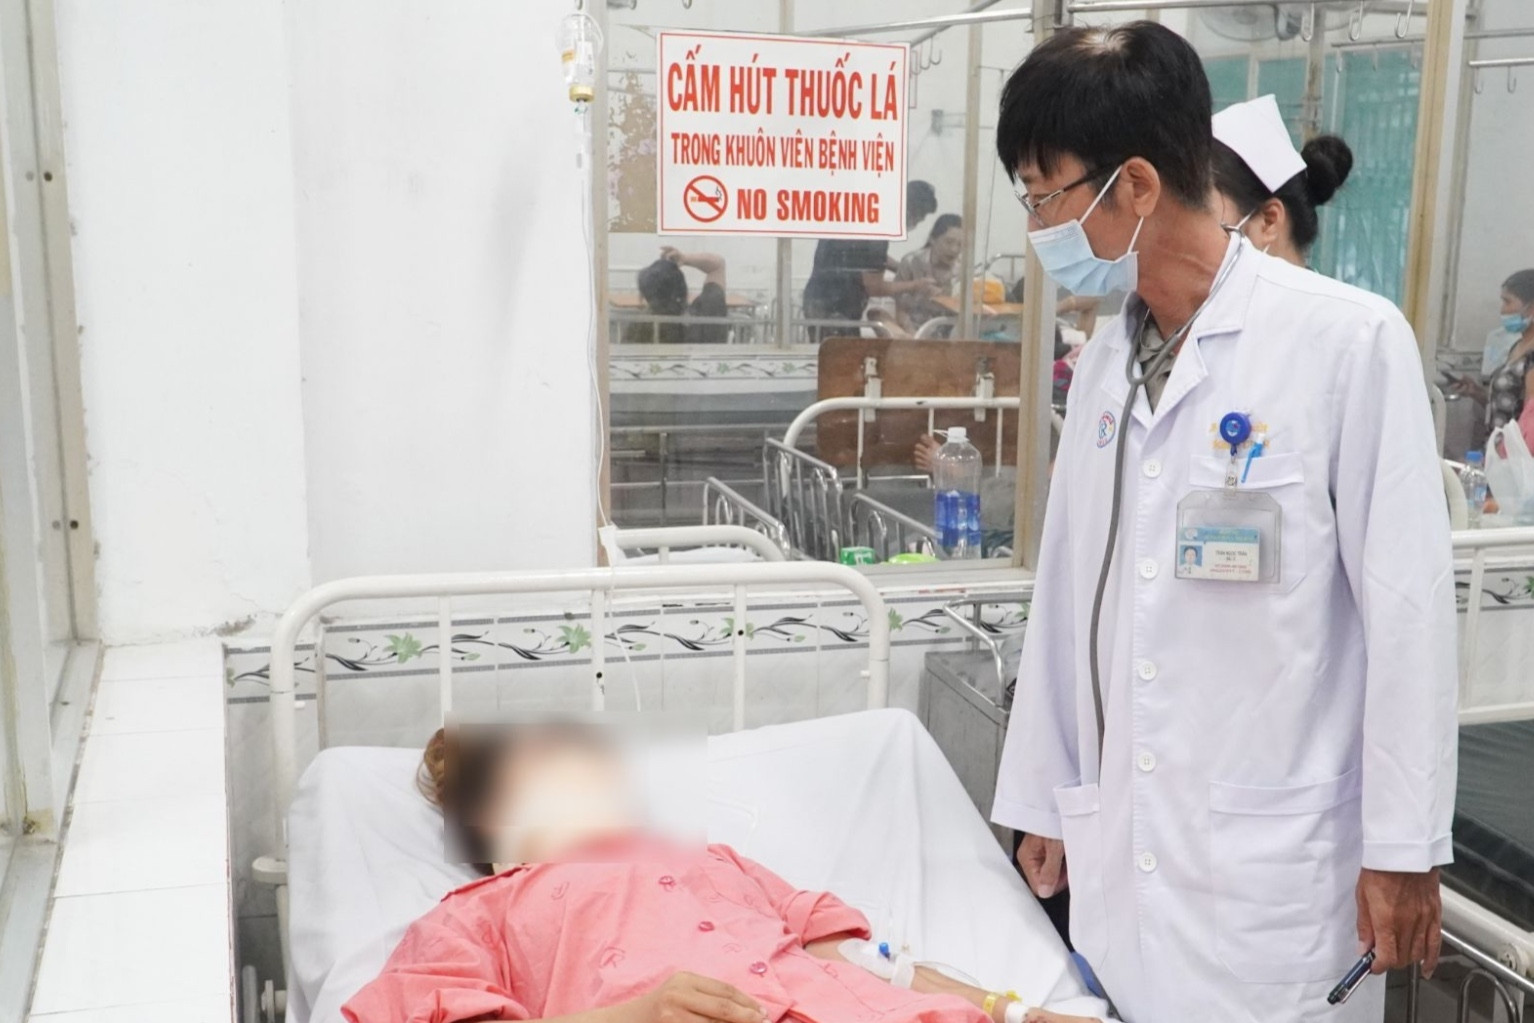 Tình hình cô gái phải cấp cứu ở Bệnh viện Chợ Rẫy sau vụ 2 xe khách đâm nhau